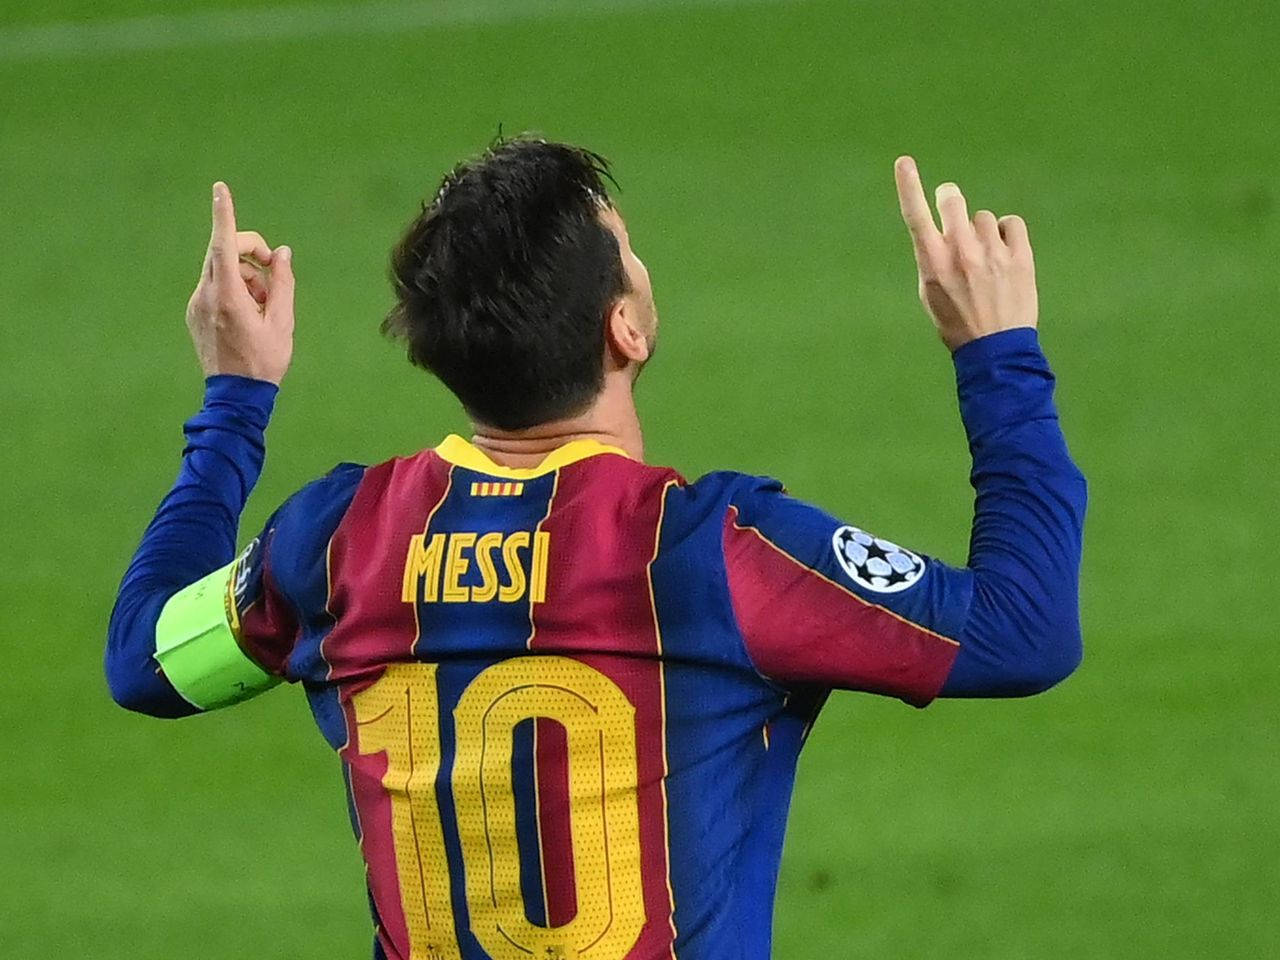 Messi2021 Mit Nach Oben Zeigender Geste Wallpaper